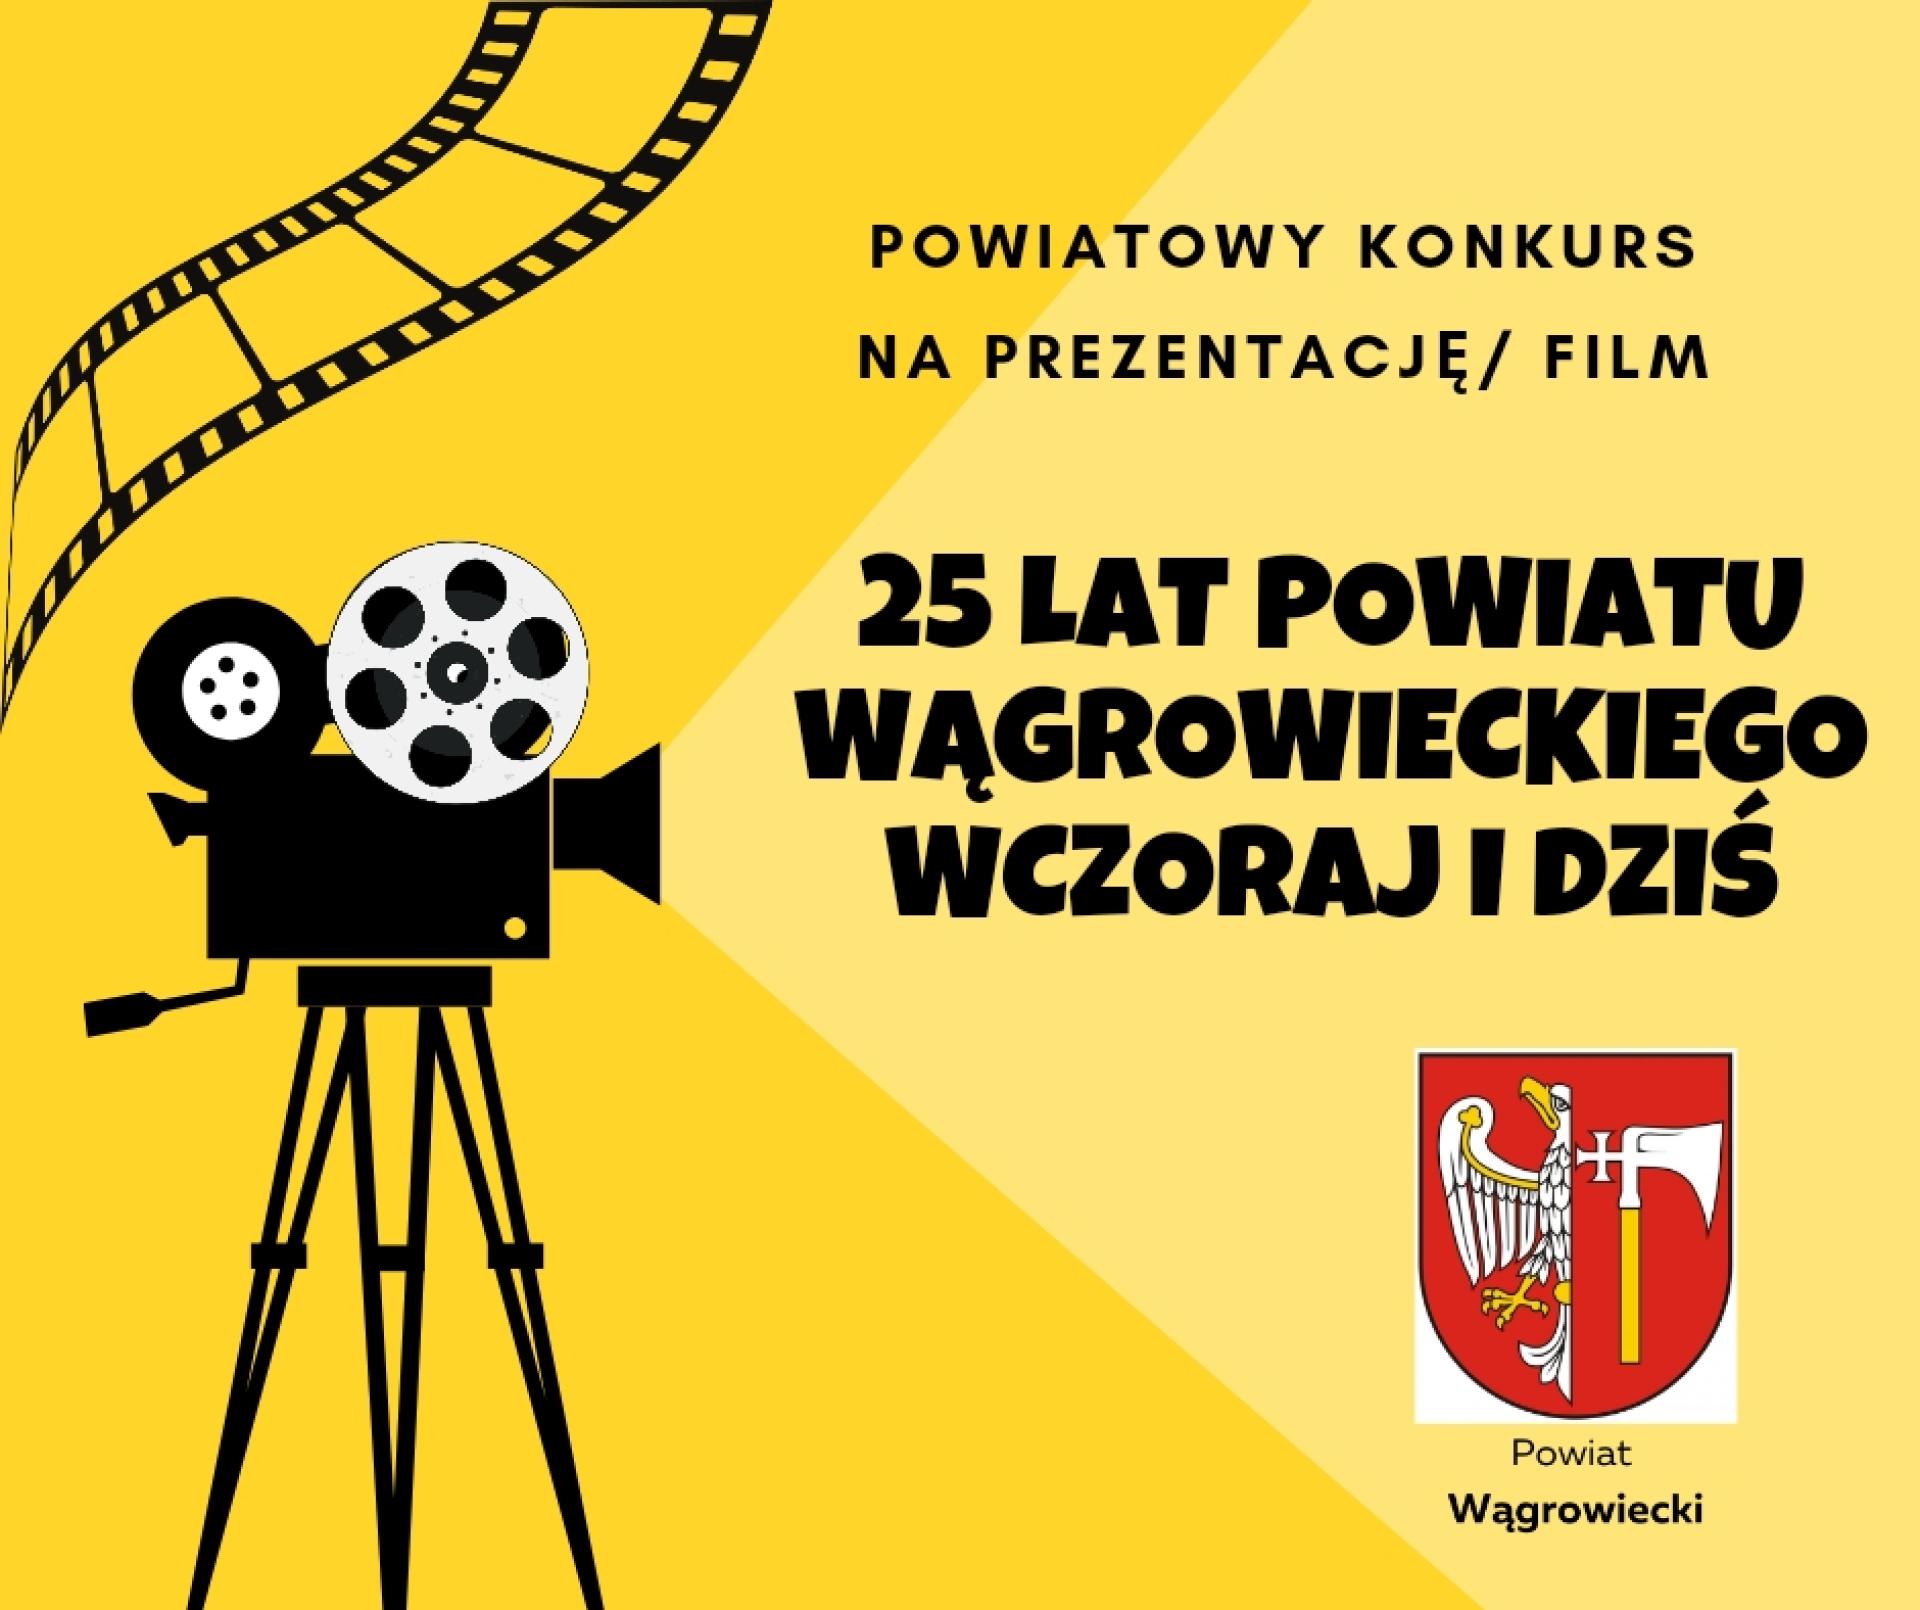 Powiatowy Konkurs na Prezentację/Film „25 lat Powiatu Wągrowieckiego wczoraj i dziś" rozstrzygnięty